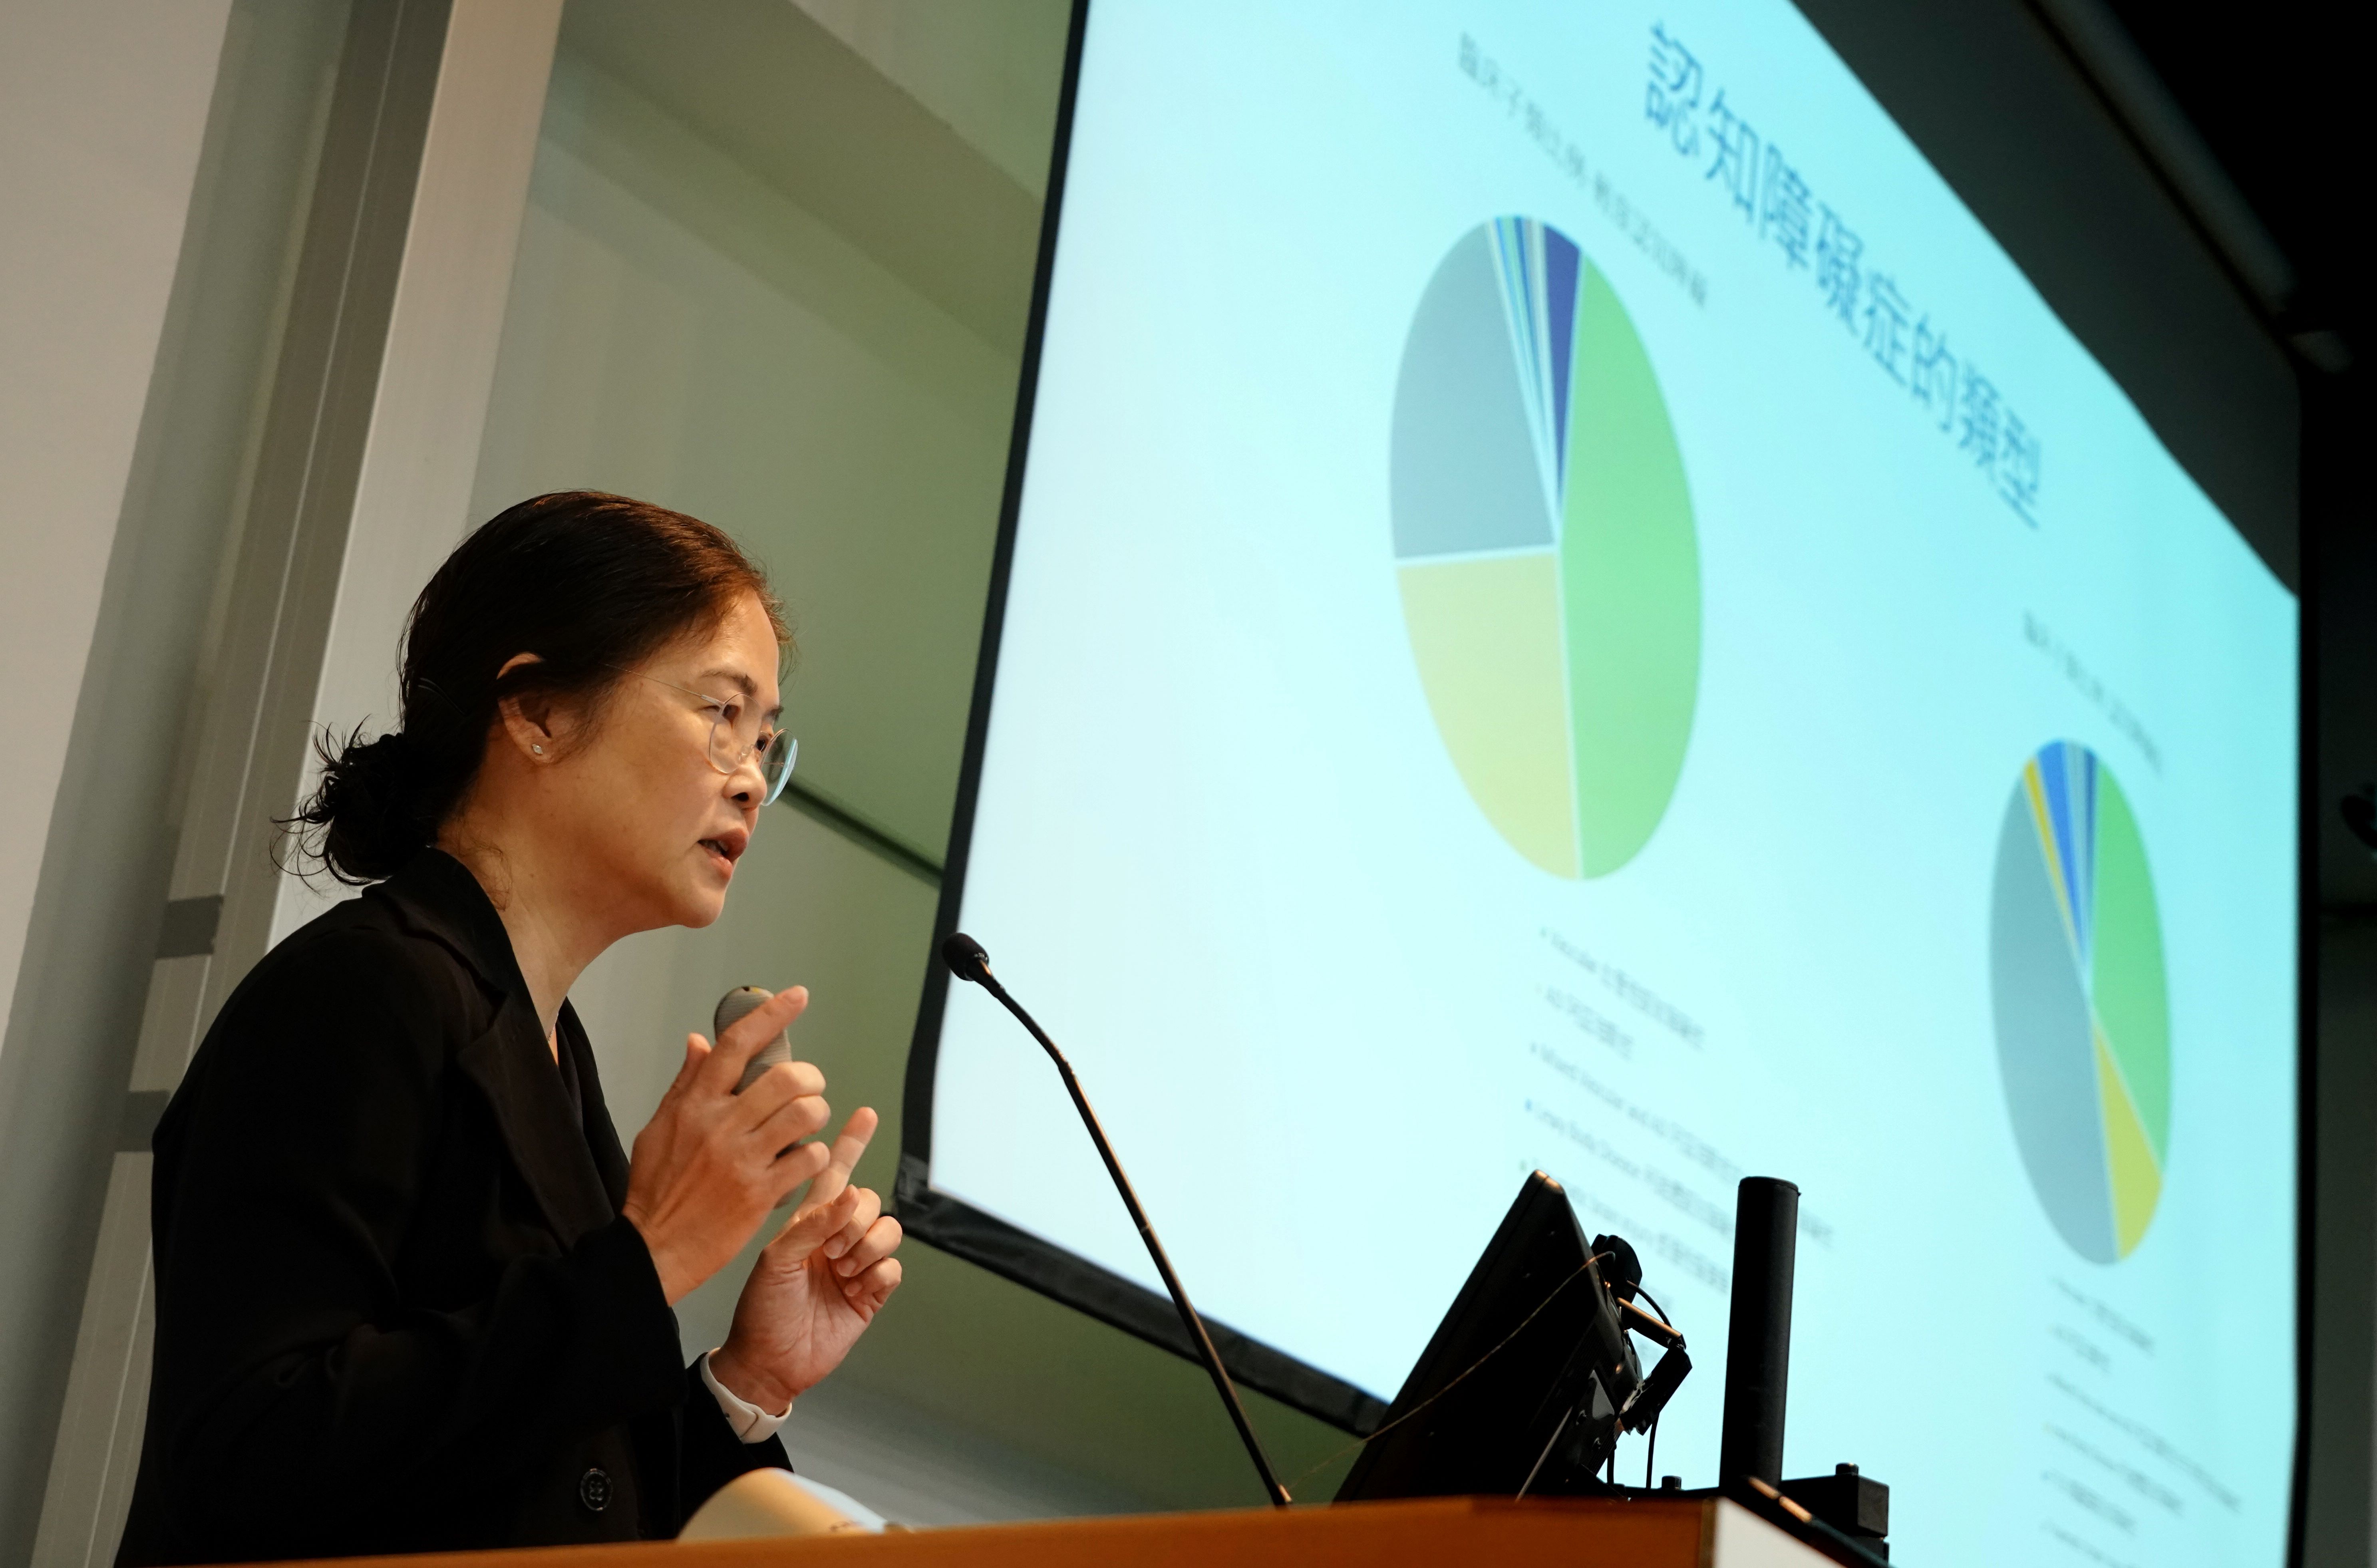 Professor Linda Lam